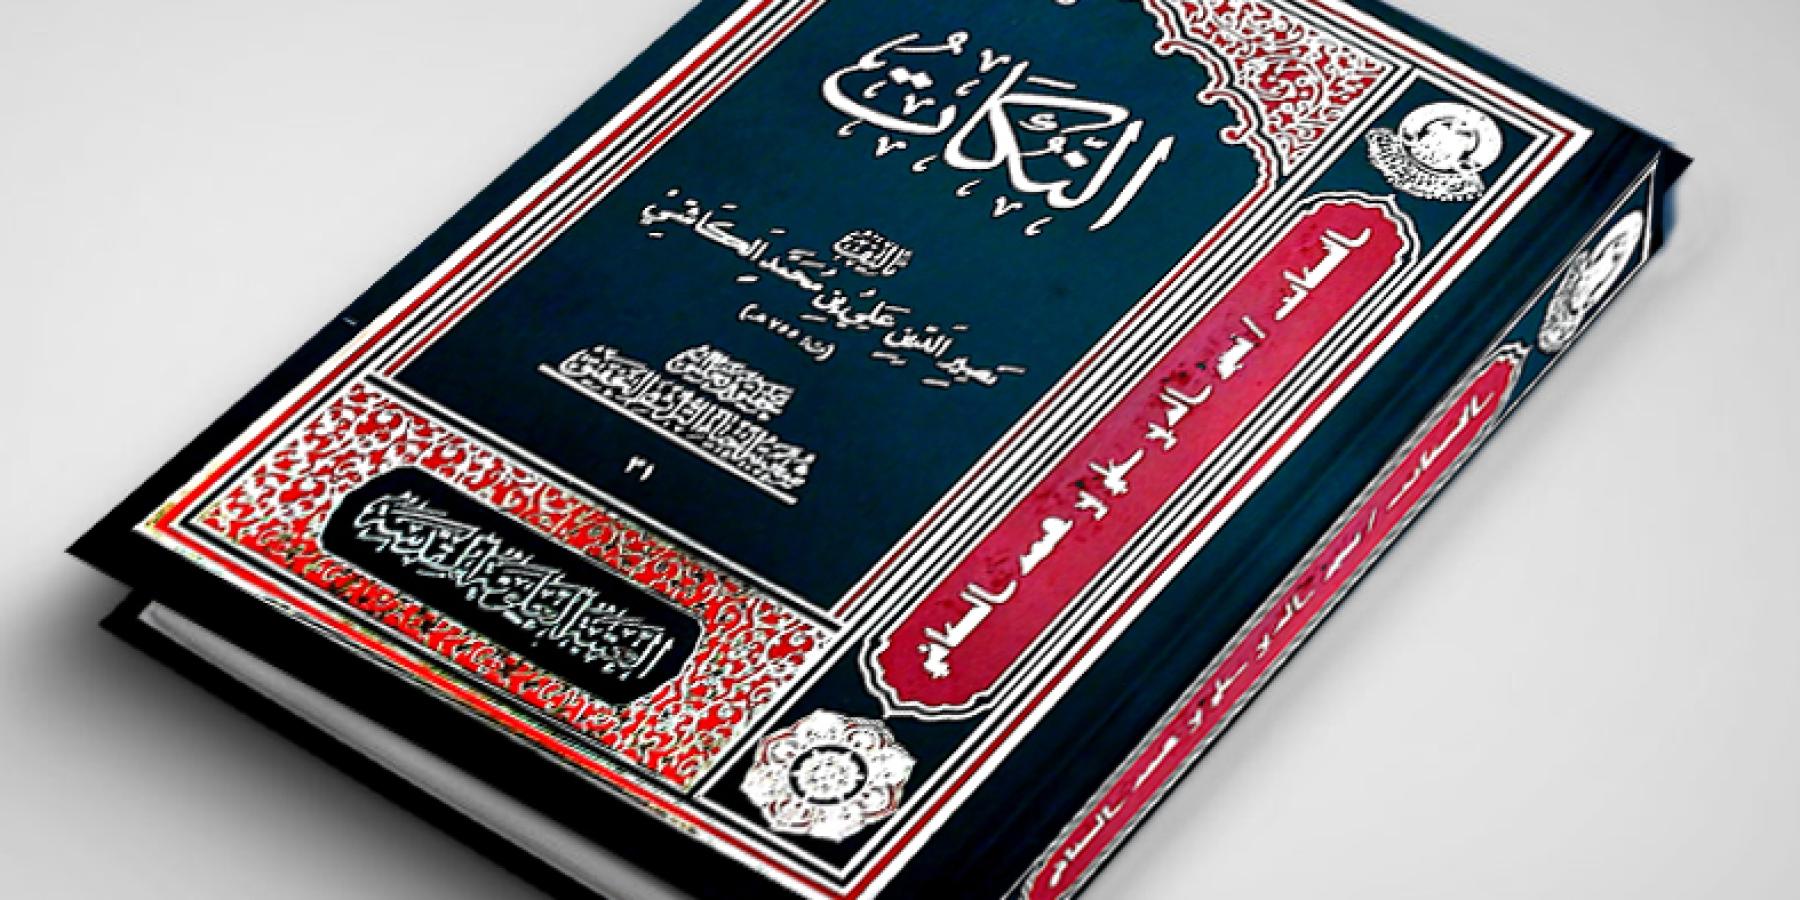 شعبة إحياء التراث في العتبة العلوية تنجز تحقيق كتاب "النُكات" للعالم الجليل علي بن محمد الكاشي